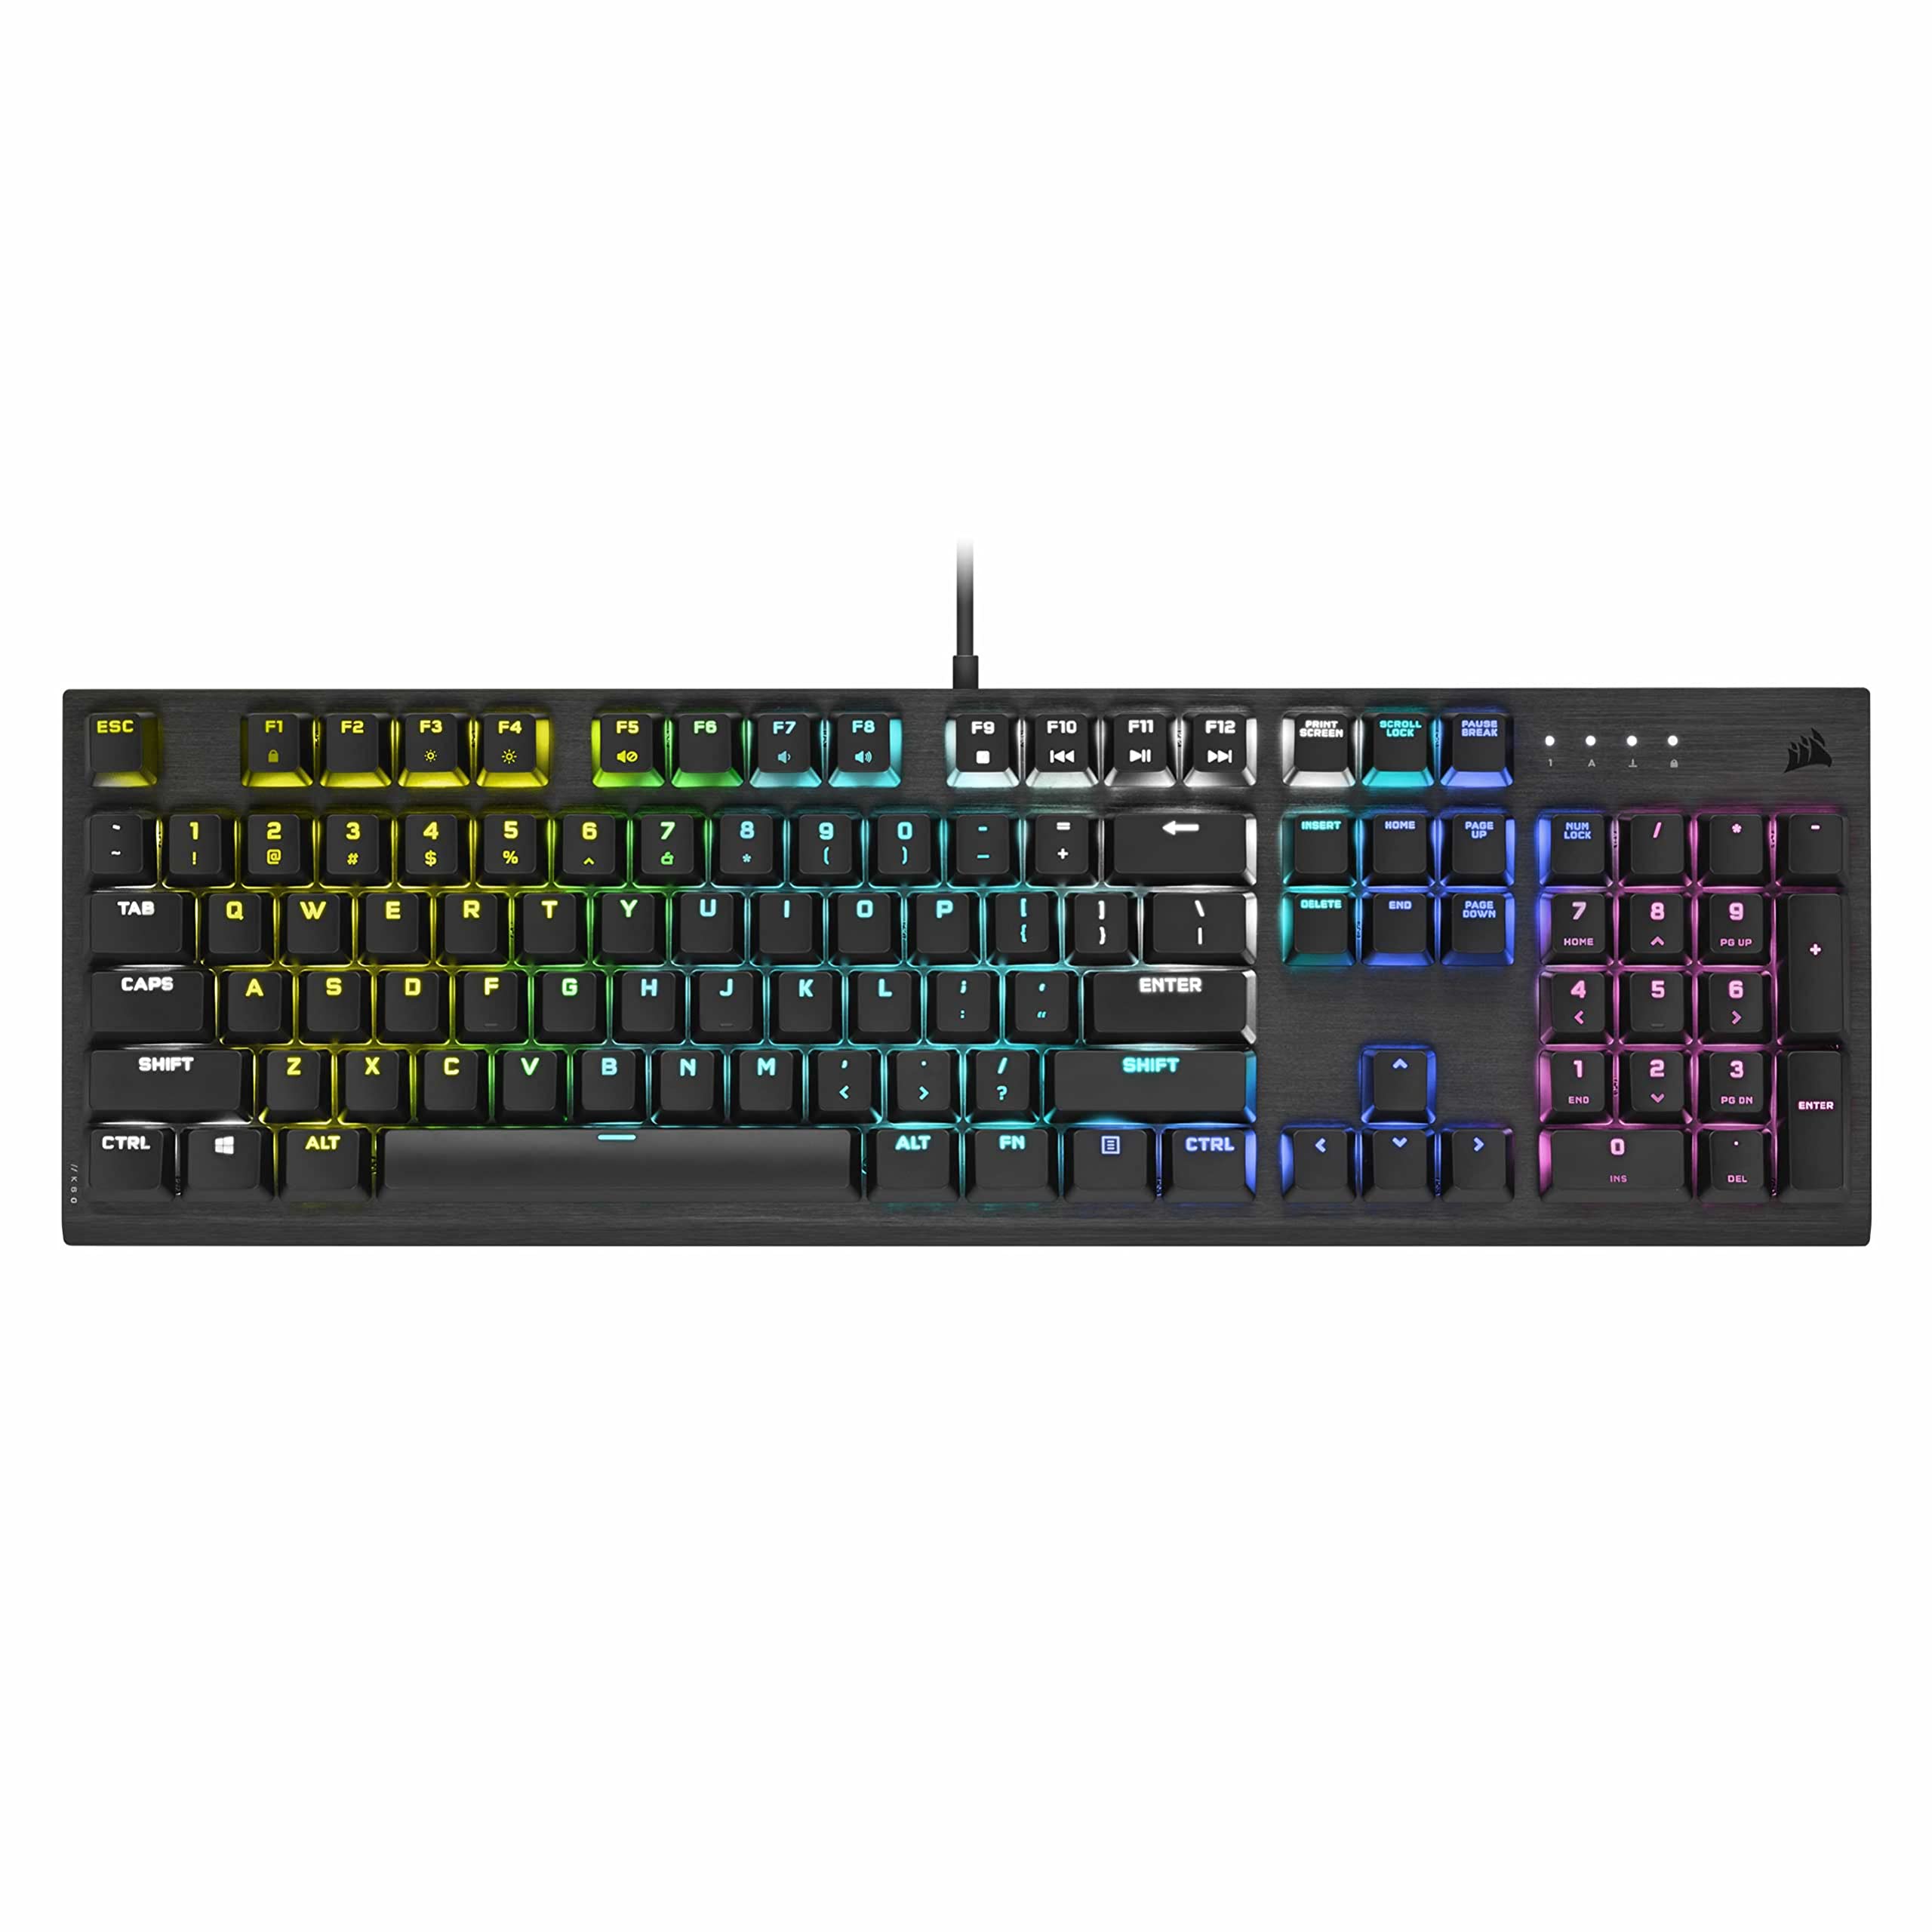 Corsair K60 RGB Pro Low Profile Mechanical Gaming Keyboard - $49.00